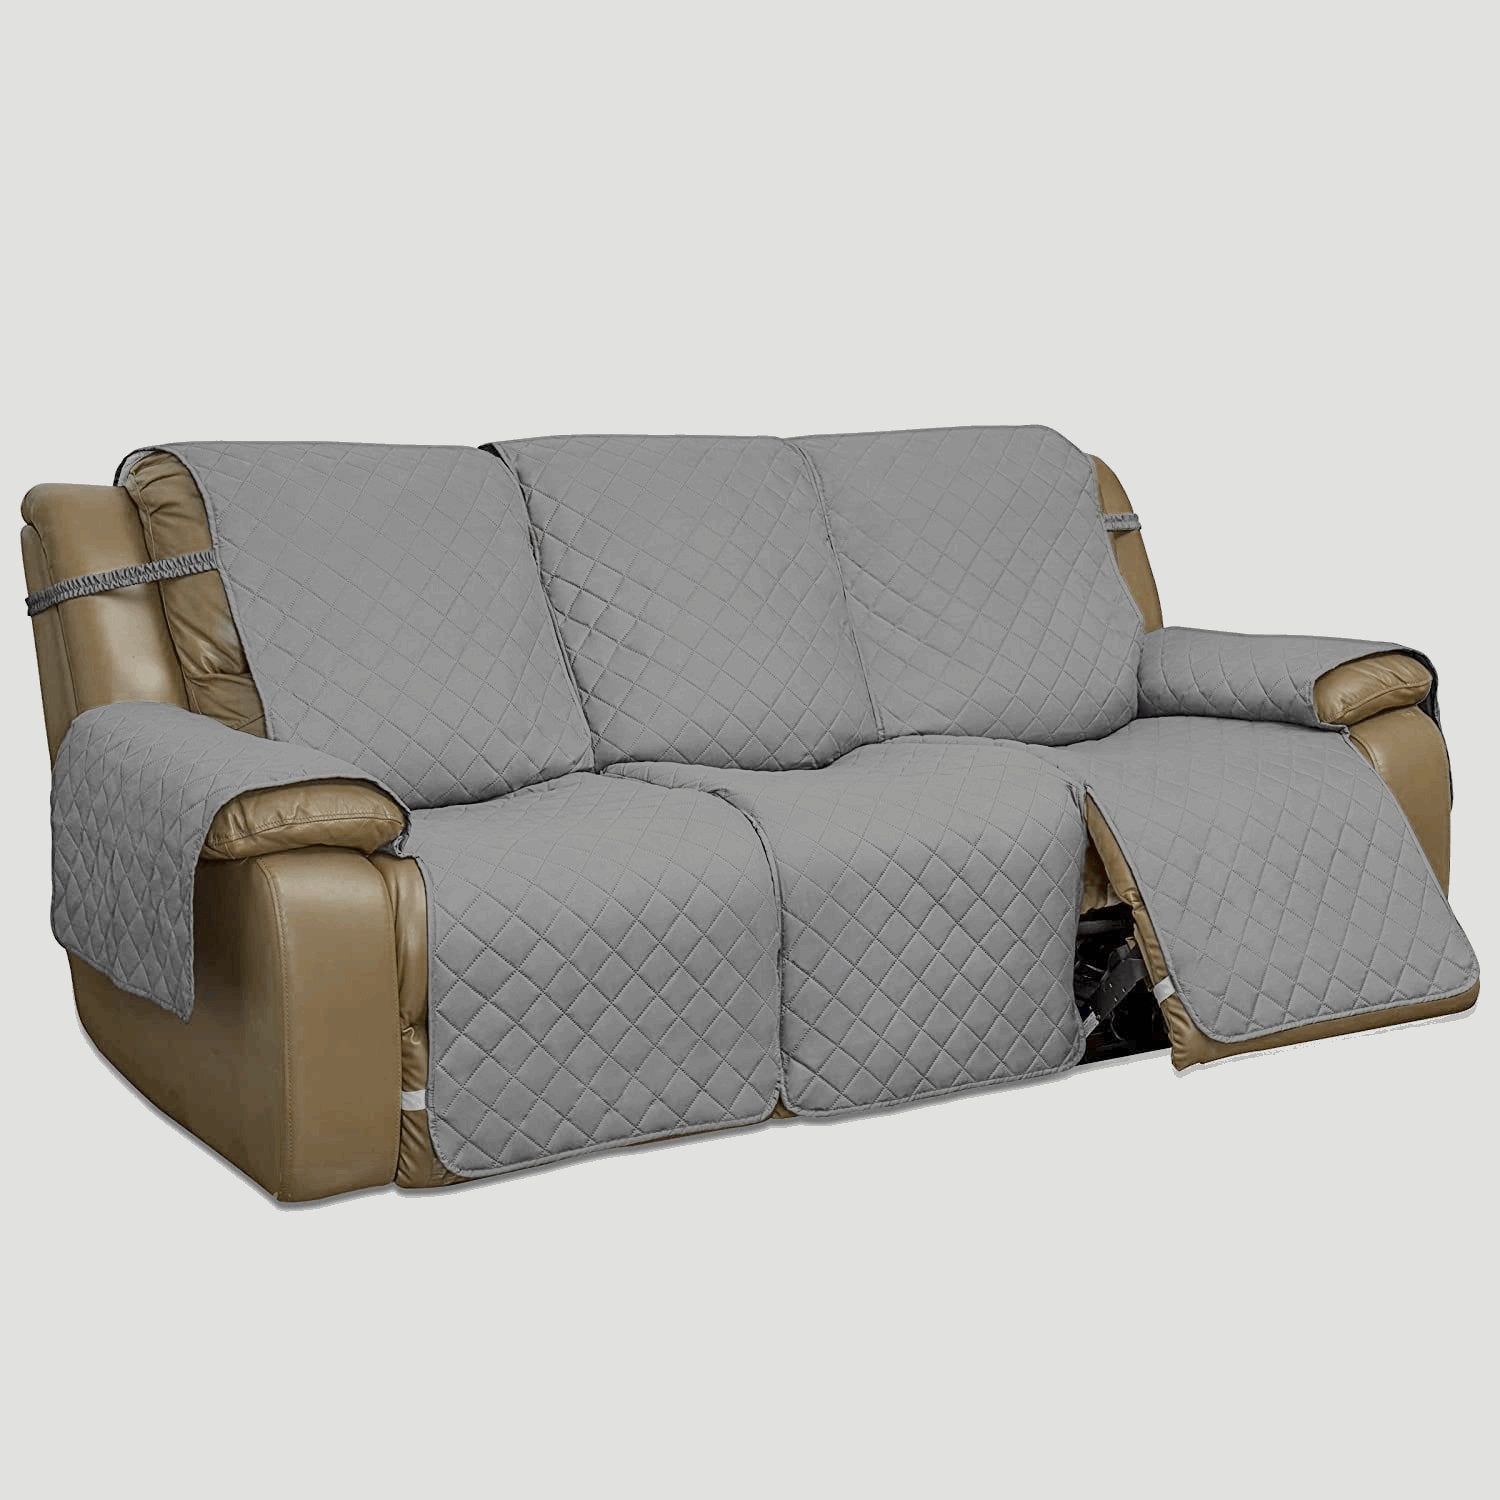 Easy-Going Anti Slip Split Sofa Cover for 3 Seat Recliner Each